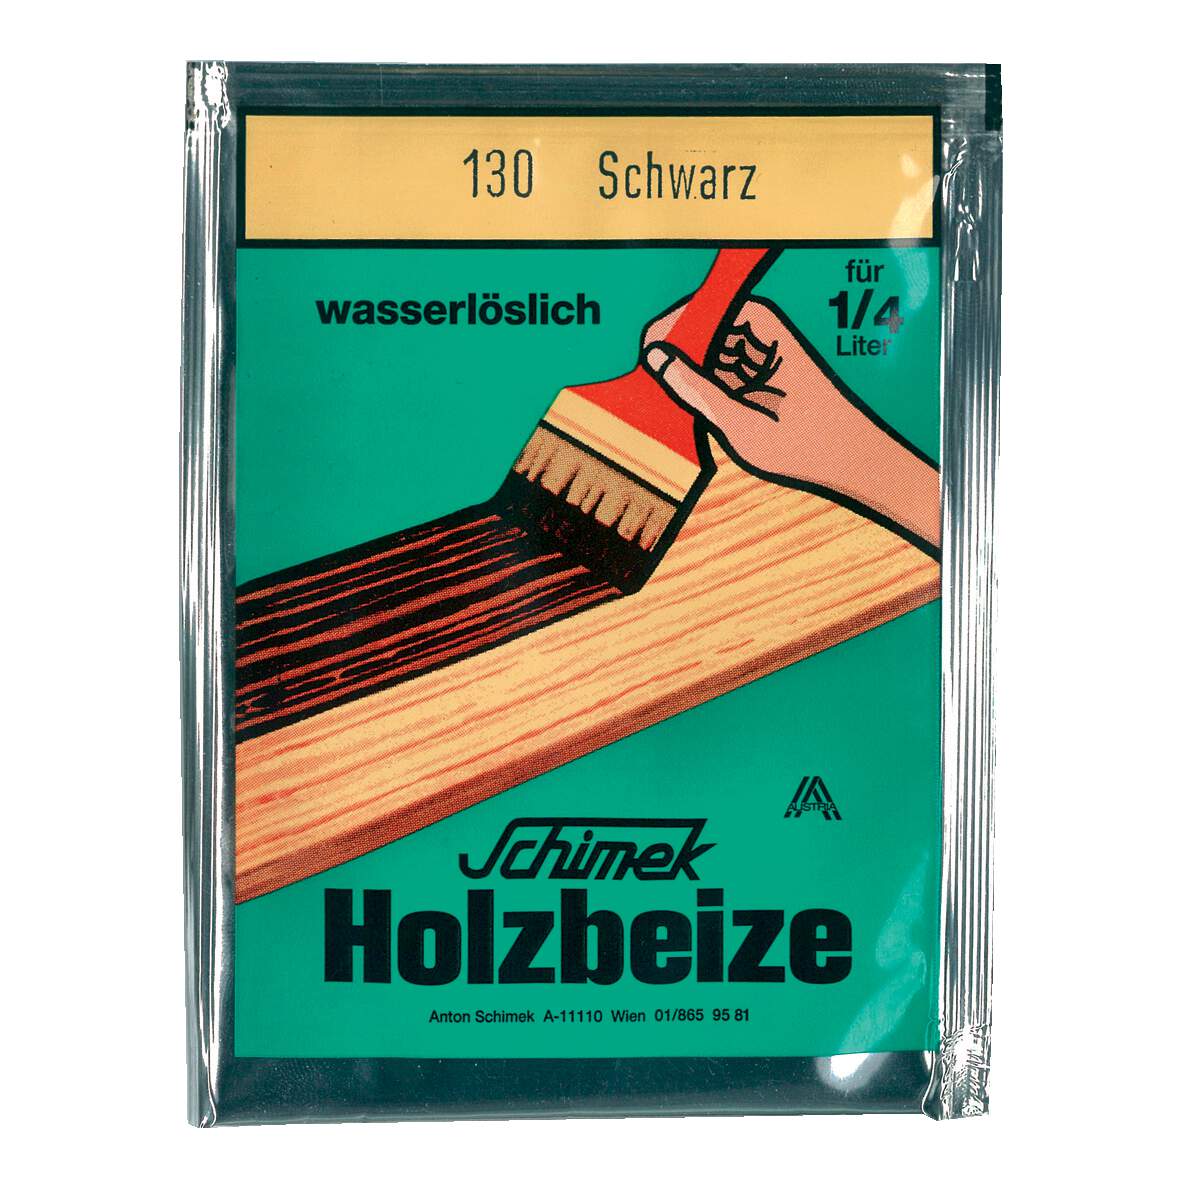 1216650 - Holzbeize Schwarz Nr.130 wasserlöslich